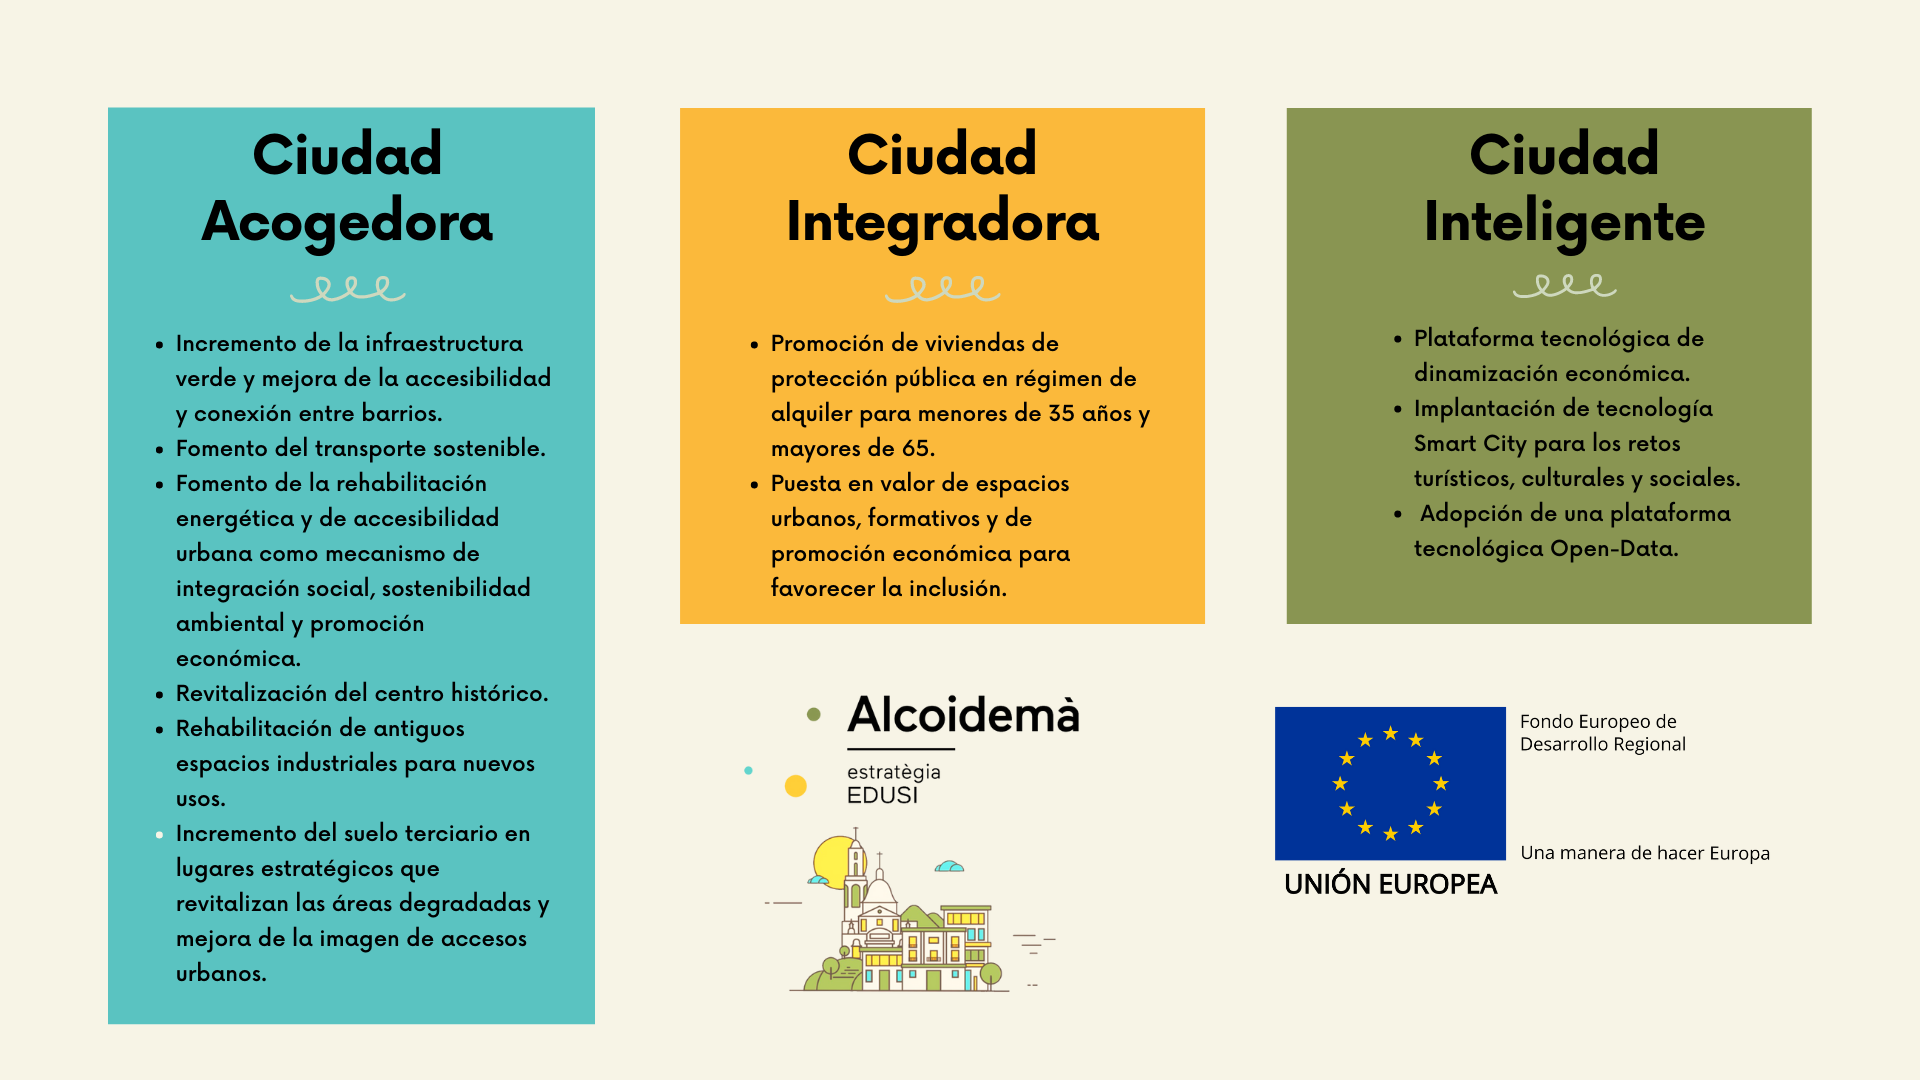 Alcoidemà estrategia Edusi - Logo Unión Europea Fondo Europeo de Desarrollo Regional (descripción detallada a continuación)